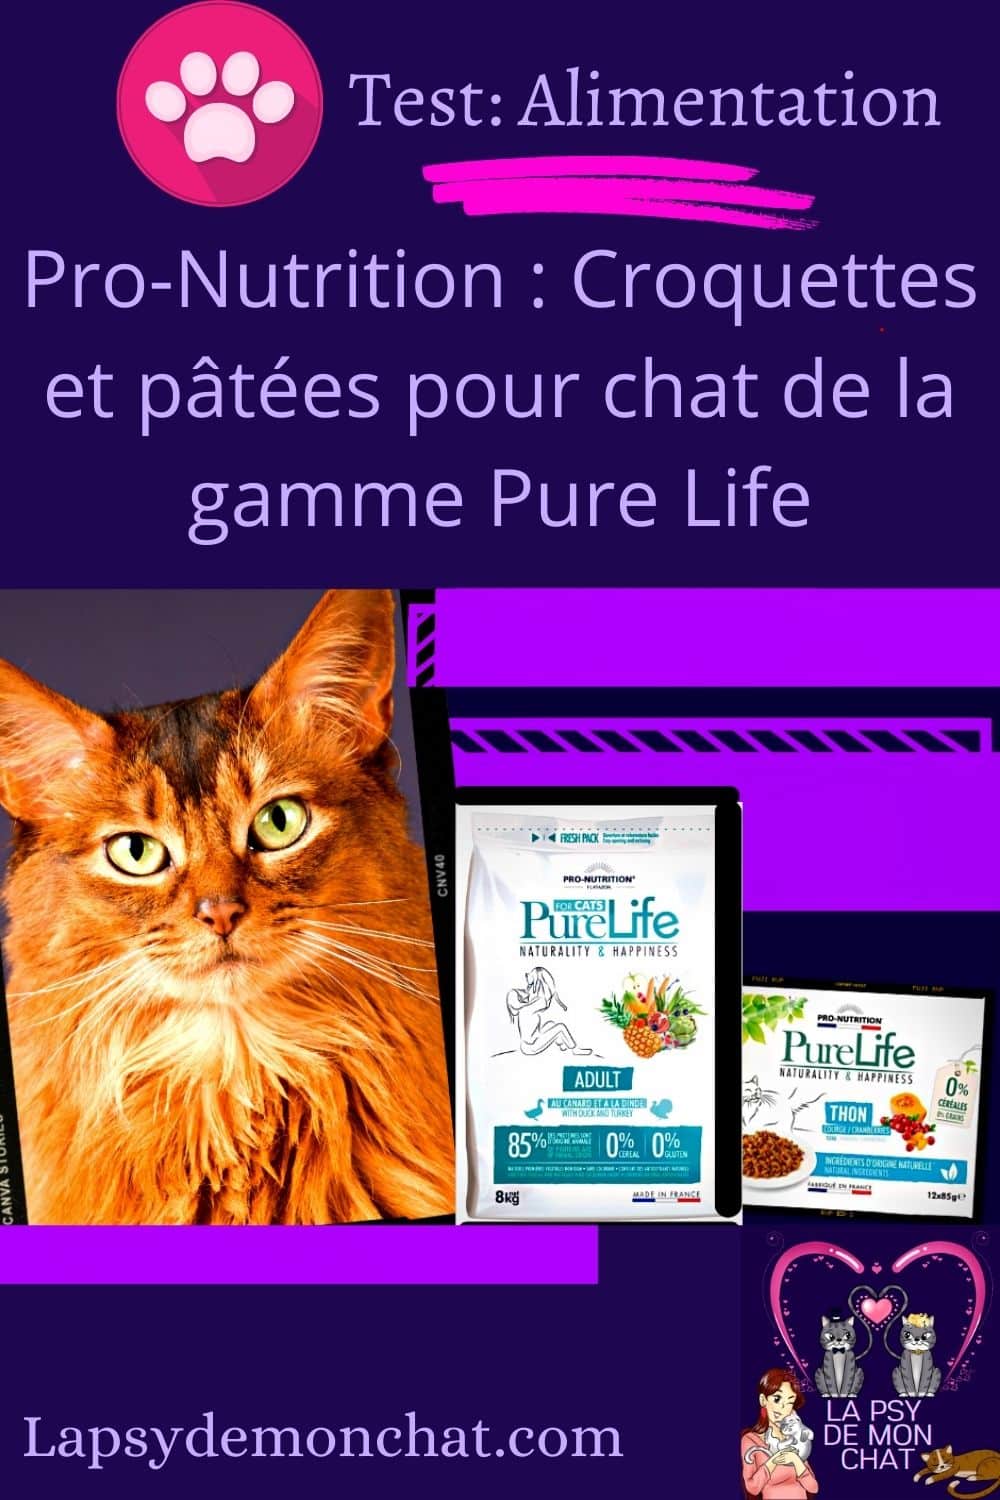 Pro-Nutrition Croquettes et pâtées pour chat de la gamme Pure Life - pinterest